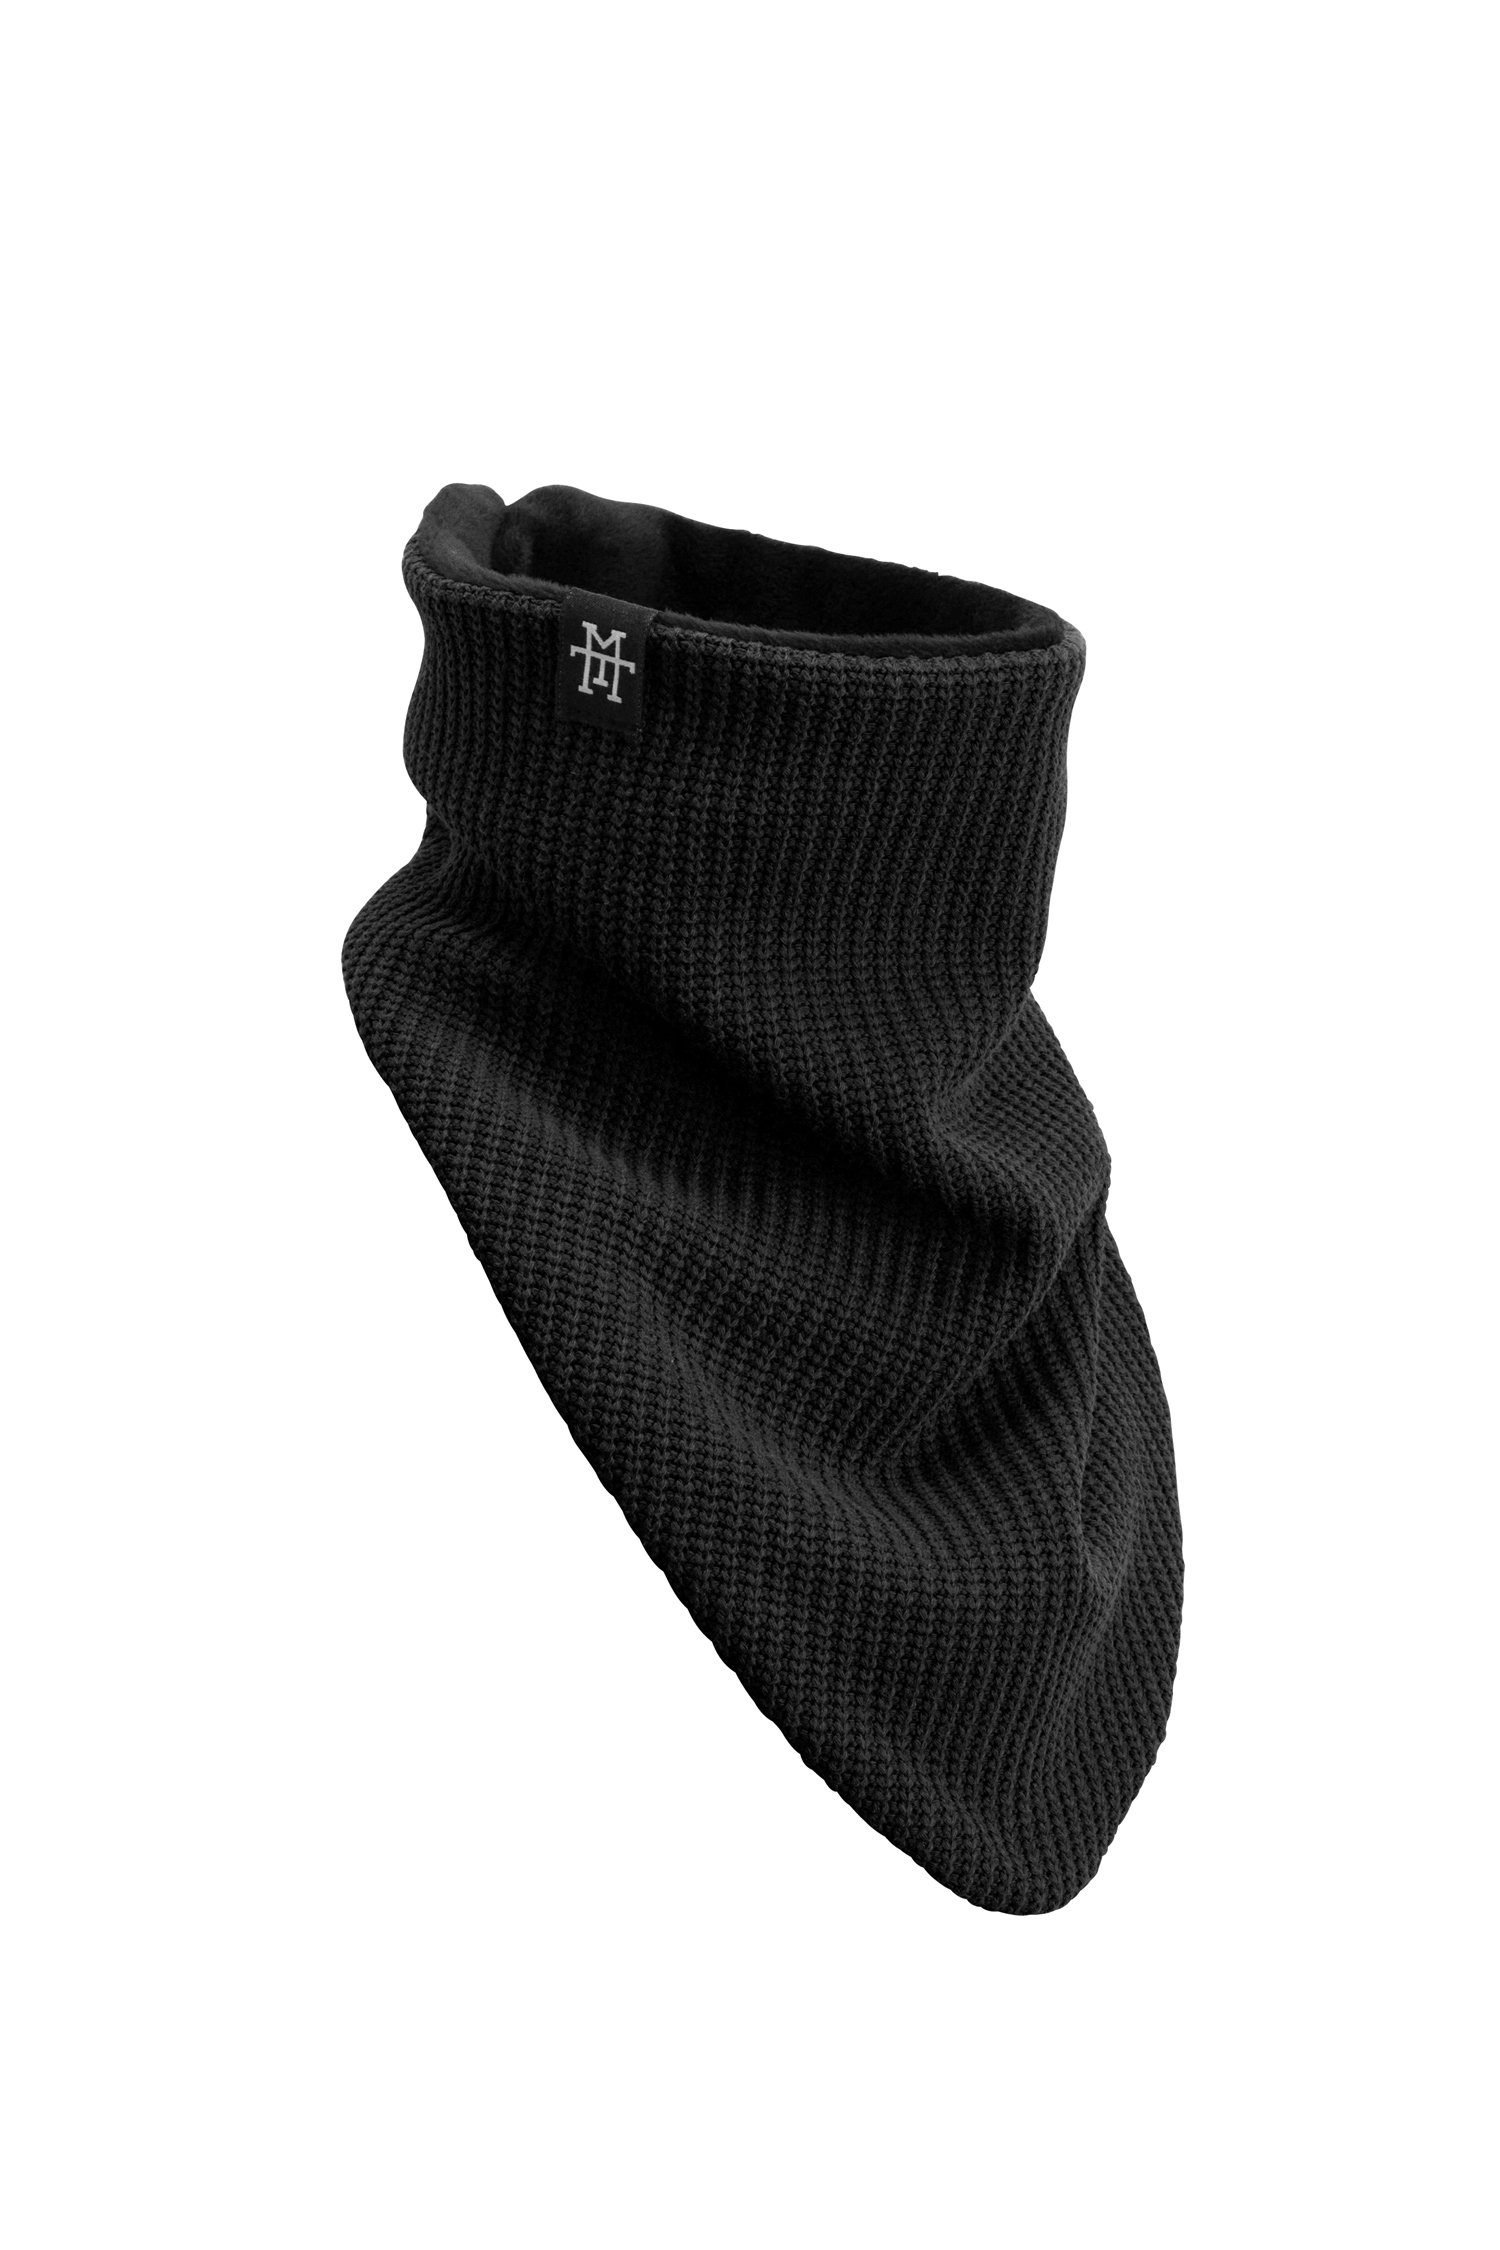 Manufaktur13 Strickschal Knit Windbreaker - Bandana, Halstücher in versch. Varianten, Multifunktionstuch, geeignet für Motorrad & Fahrrad Black Out